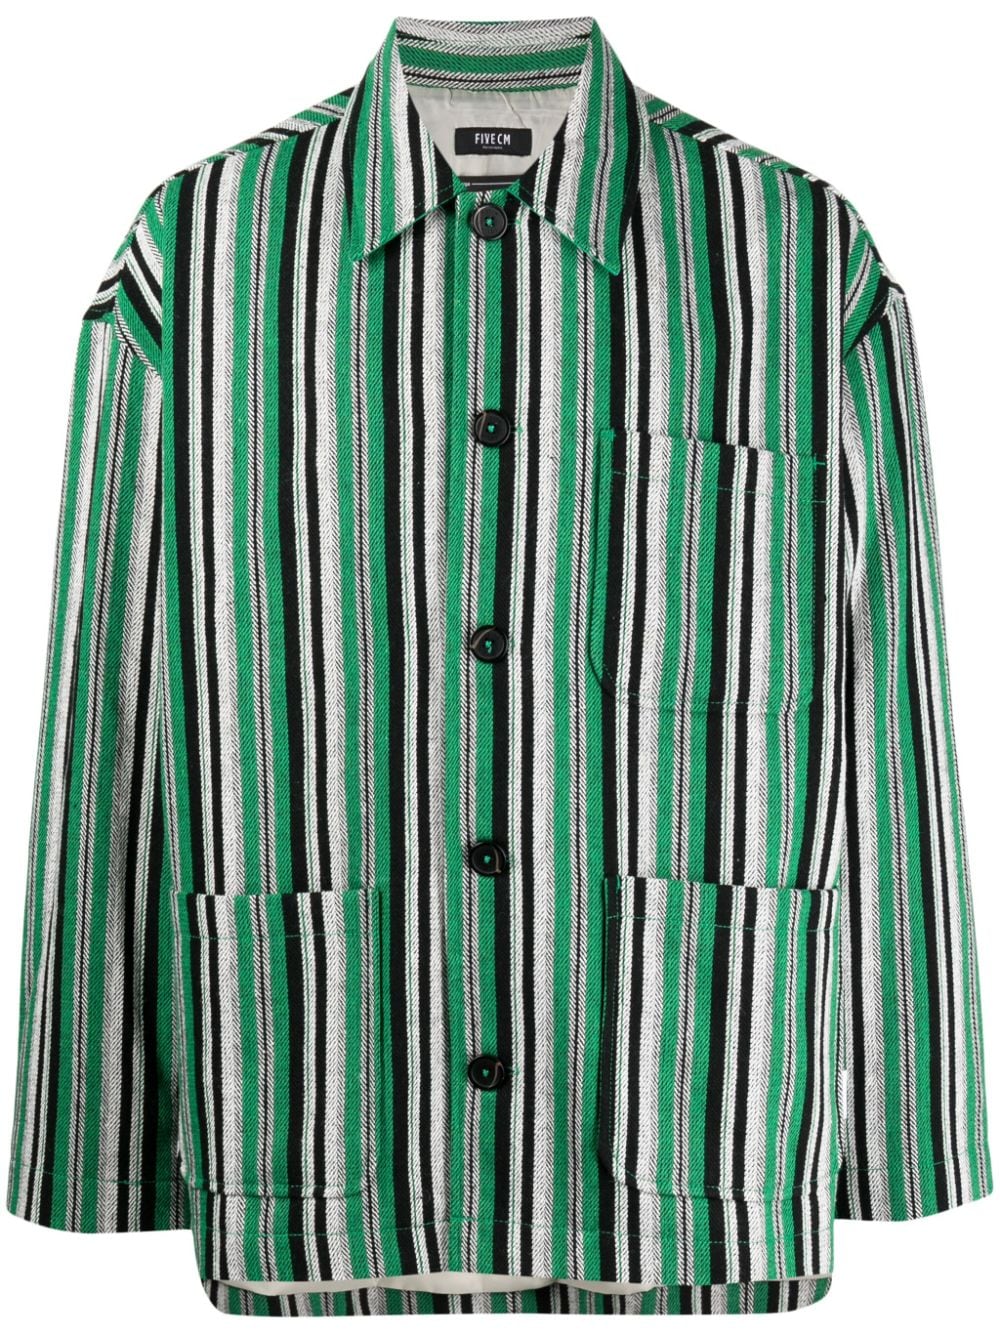 button-up striped shirt